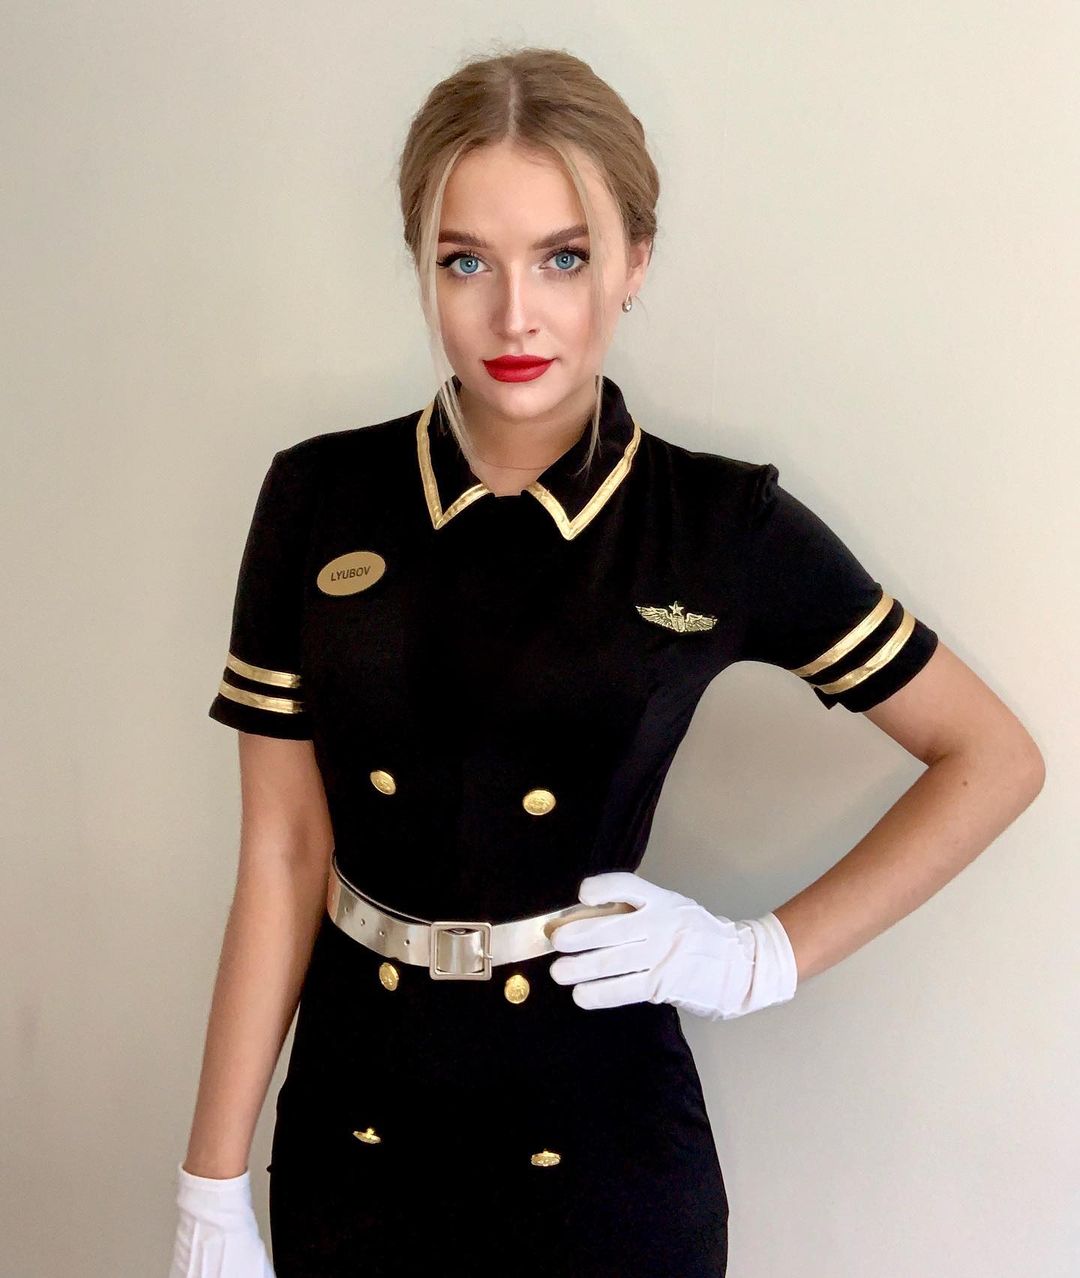 Nữ tiếp viên hàng không người Nga nổi bật với gương mặt đẹp đặc biệt là đôi mắt xanh thu hút.&nbsp;